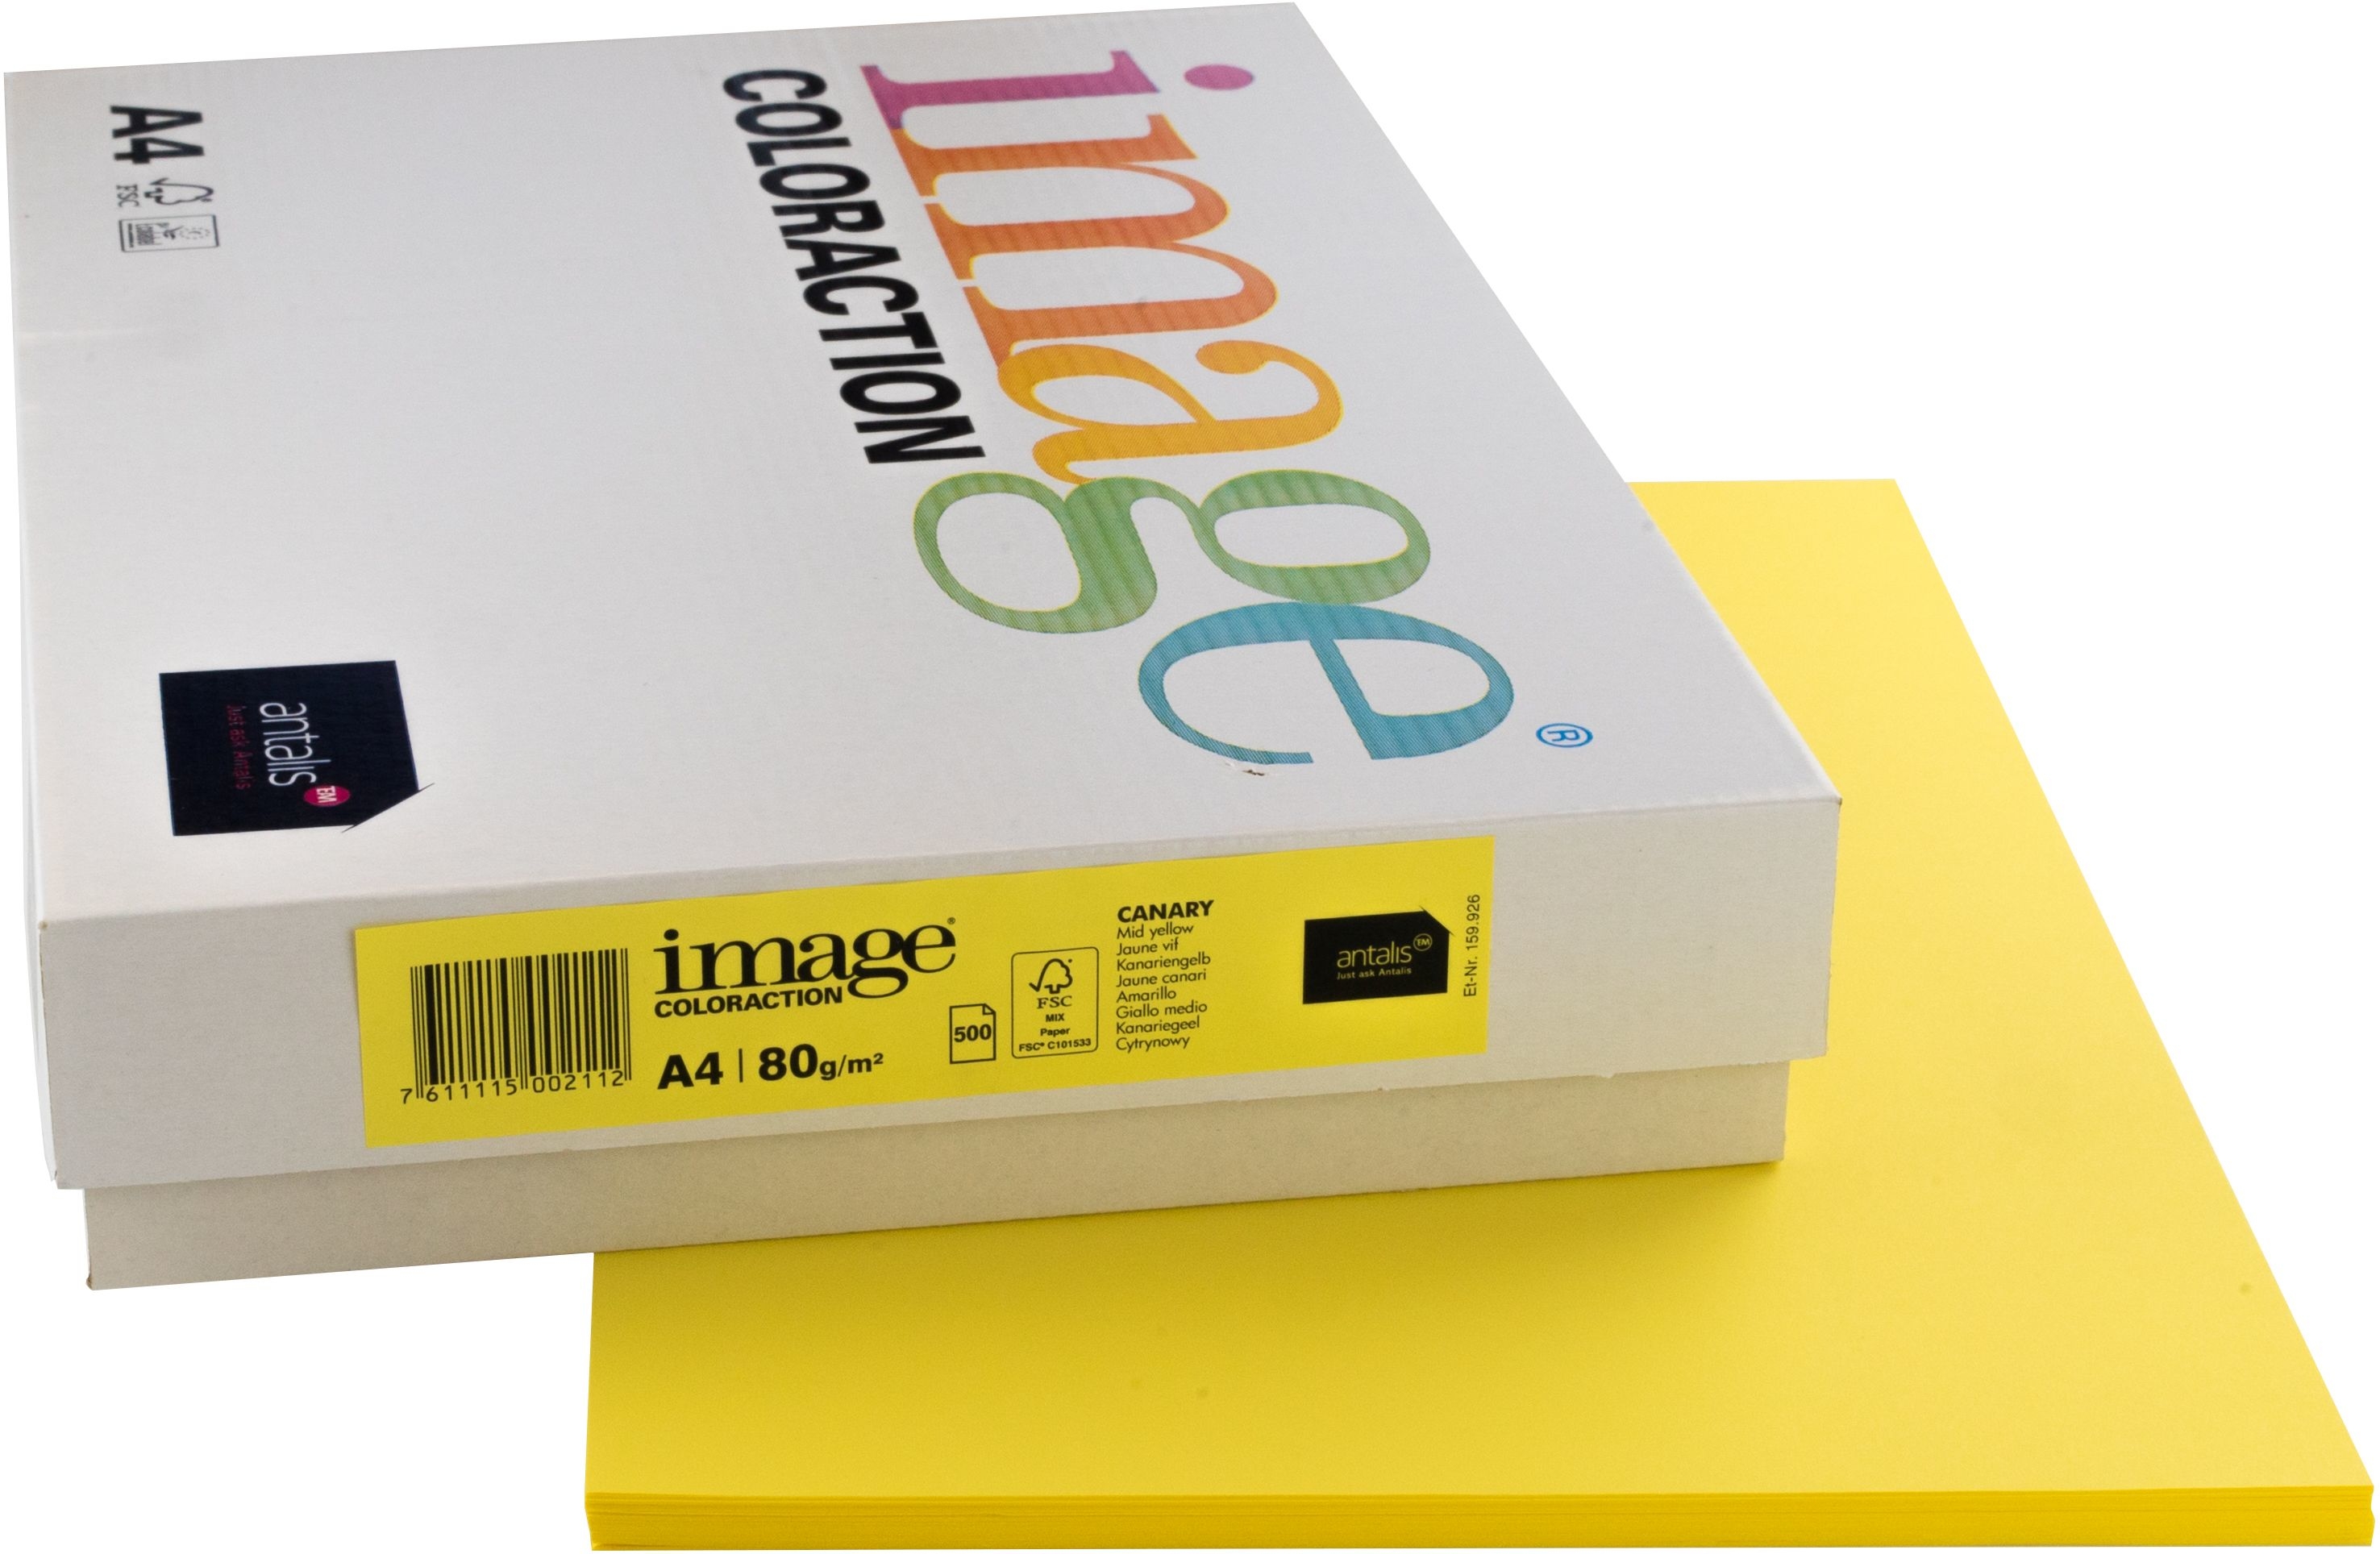 IMAGE COLORACTION Papier à copier Canary A4 274567 jaune, 80g 500 feuilles jaune, 80g 500 feuilles